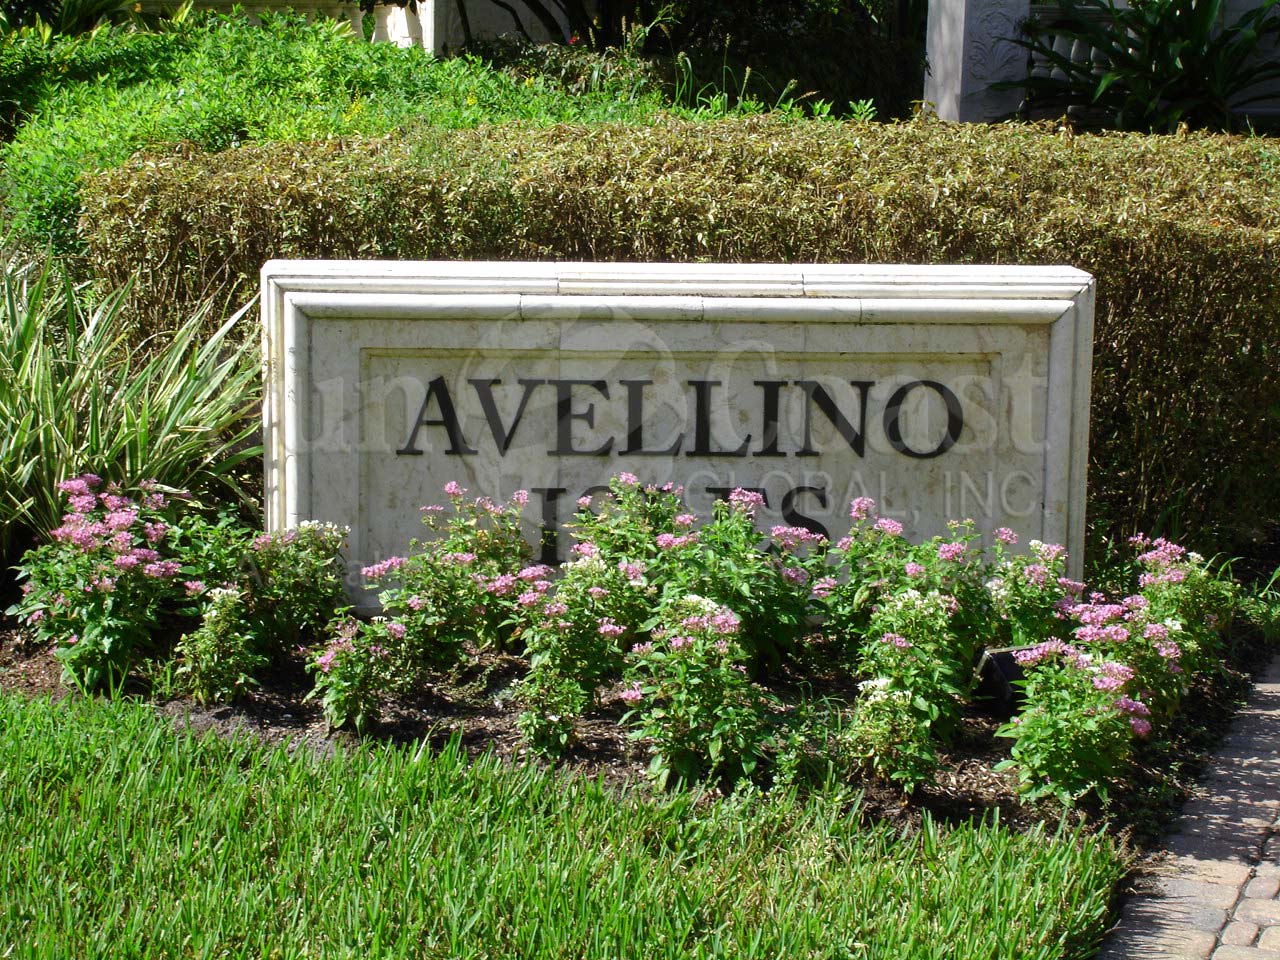 Avellino Isles signage